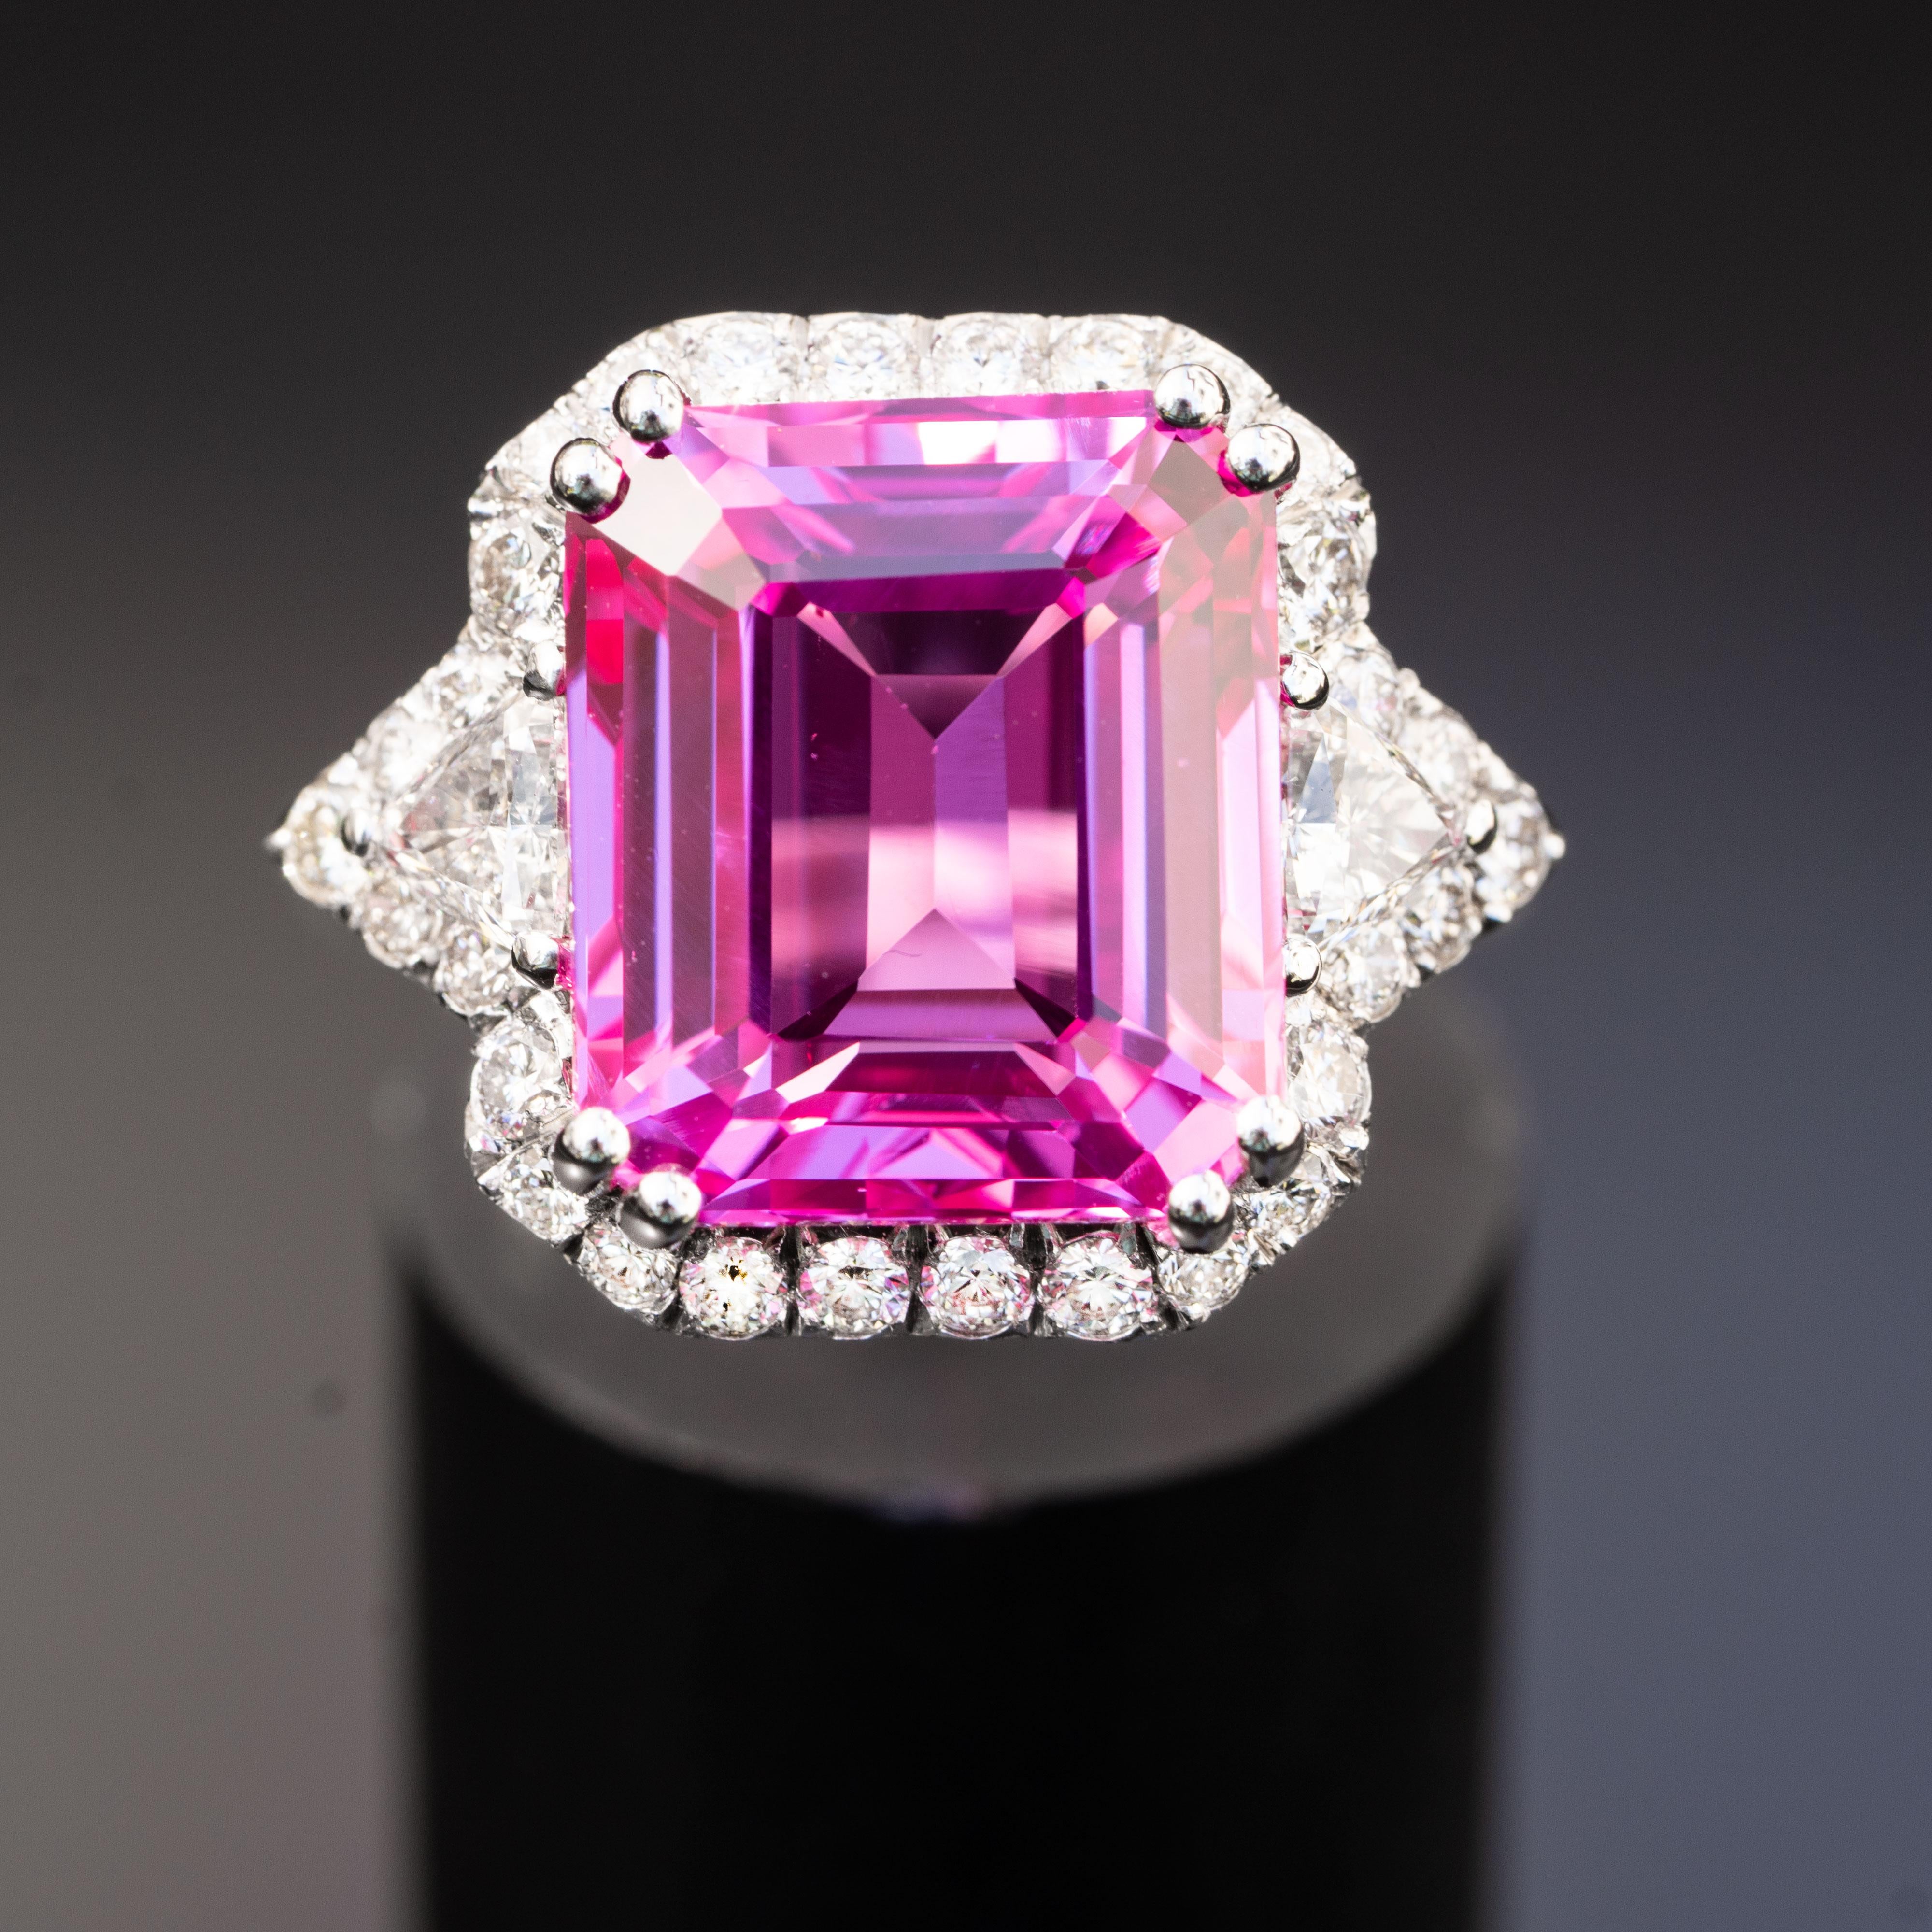 Dieser wunderschöne Ring aus rosa Saphiren wird jeden um Sie herum beeindrucken. Er besteht aus einem großen Smaragd von 13,00 Karat, der mit 1,20 Karat natürlichen Diamanten verziert ist.

Sapphire
Saphir AAA+
Die Form: Oval
Mineral: Korund
Härte: